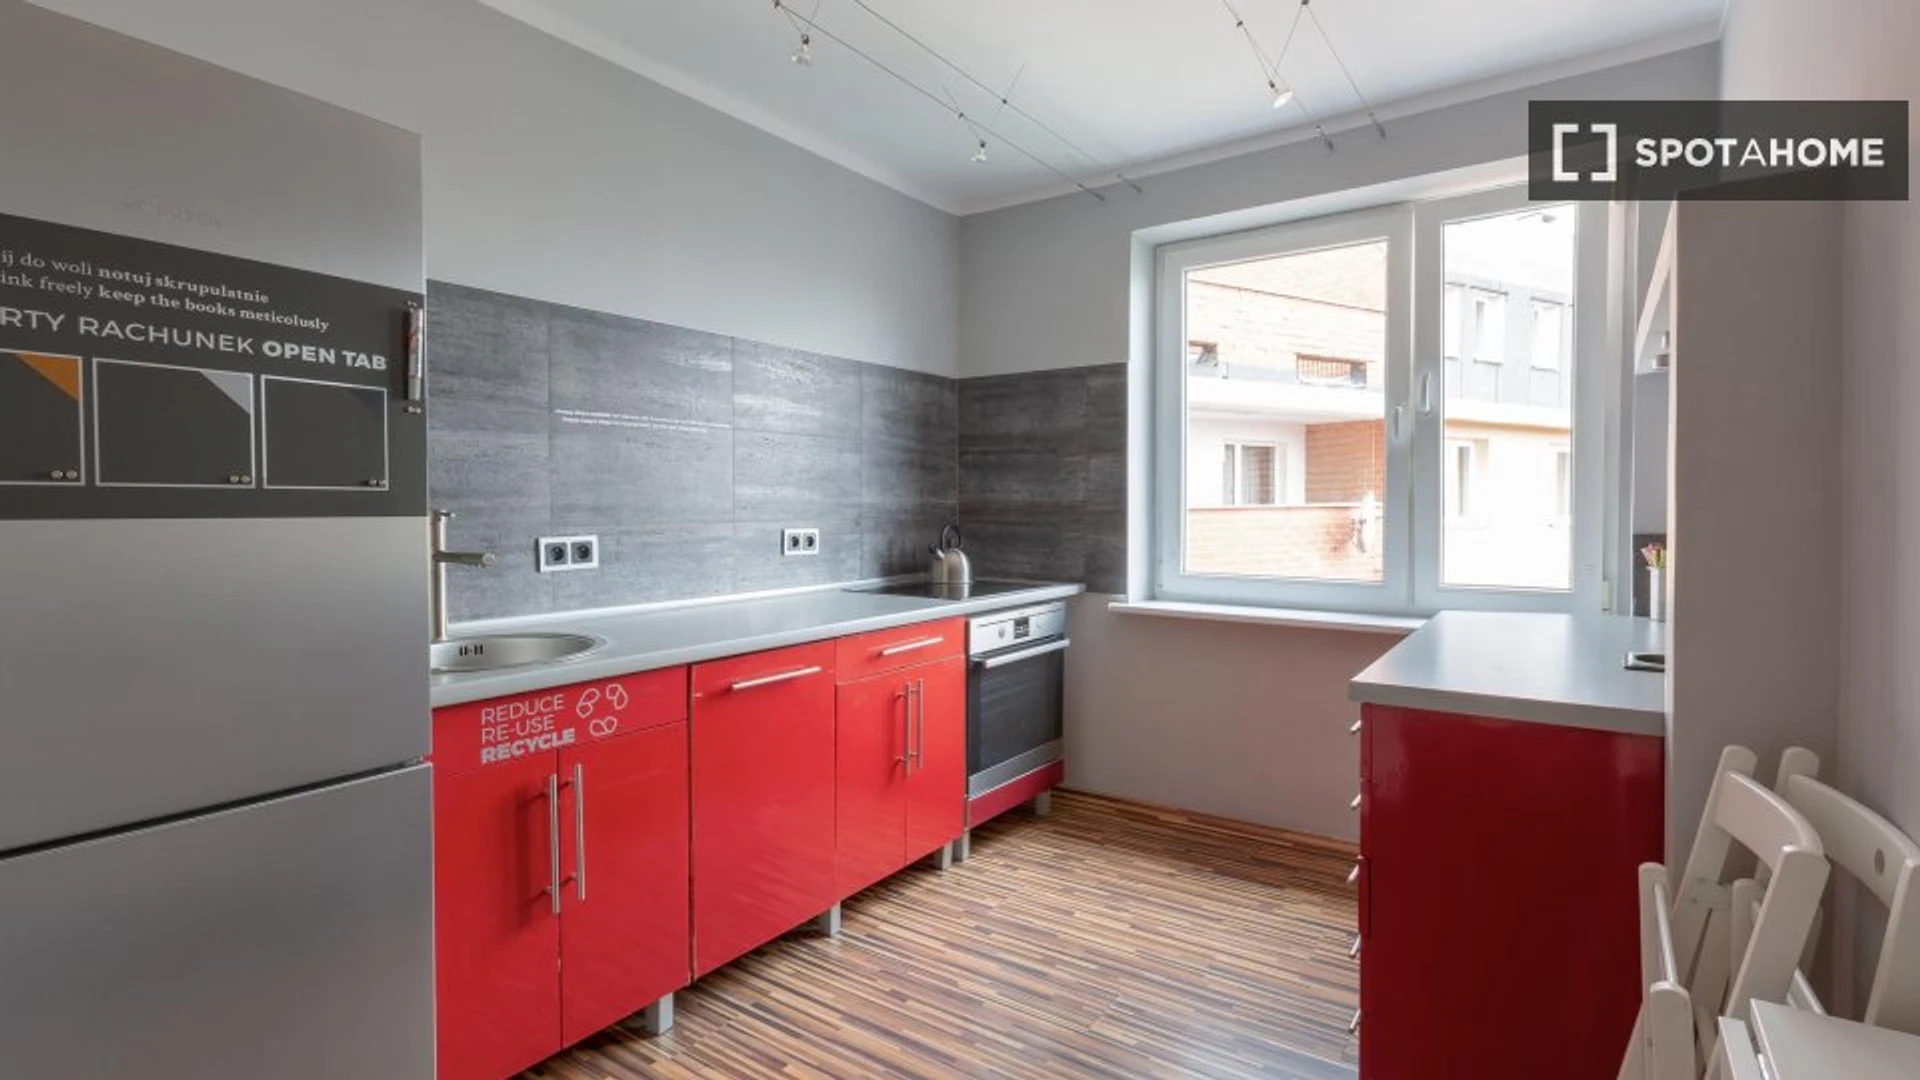 Alquiler de habitaciones por meses en Breslavia